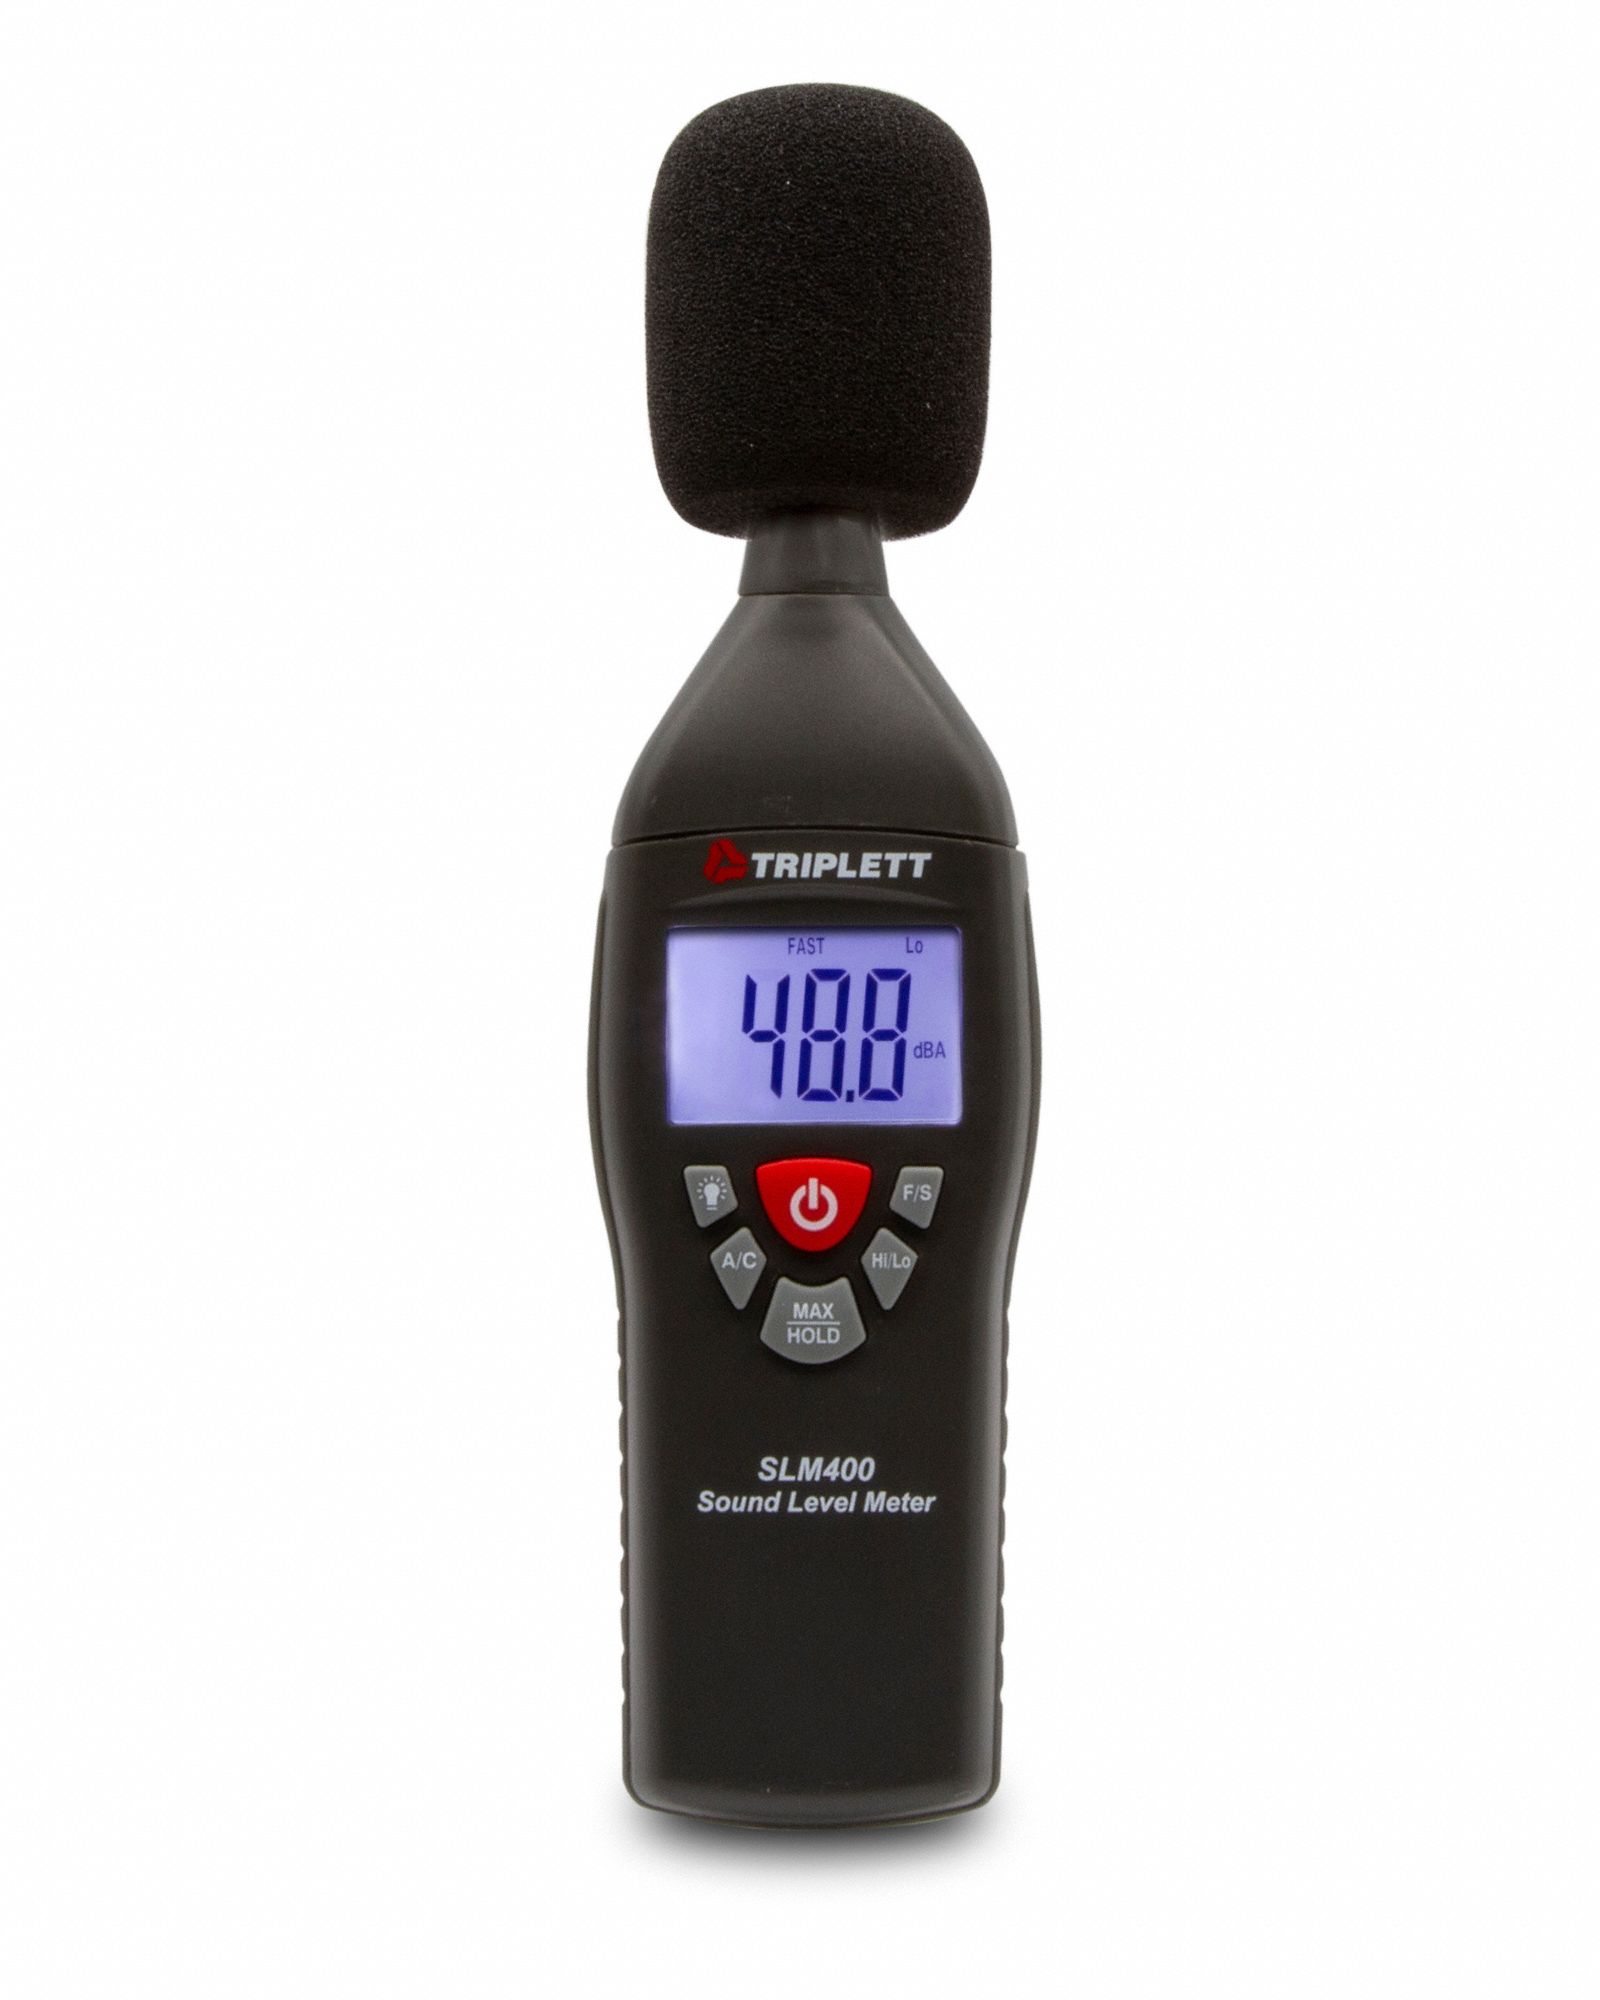 LONGJUAN-C Digital Noise Meter SW523 Noise Describe Meter Handheld LCD Display Digital Sound Level Meter Noise Detect Tester Tools Sound Level Meter 